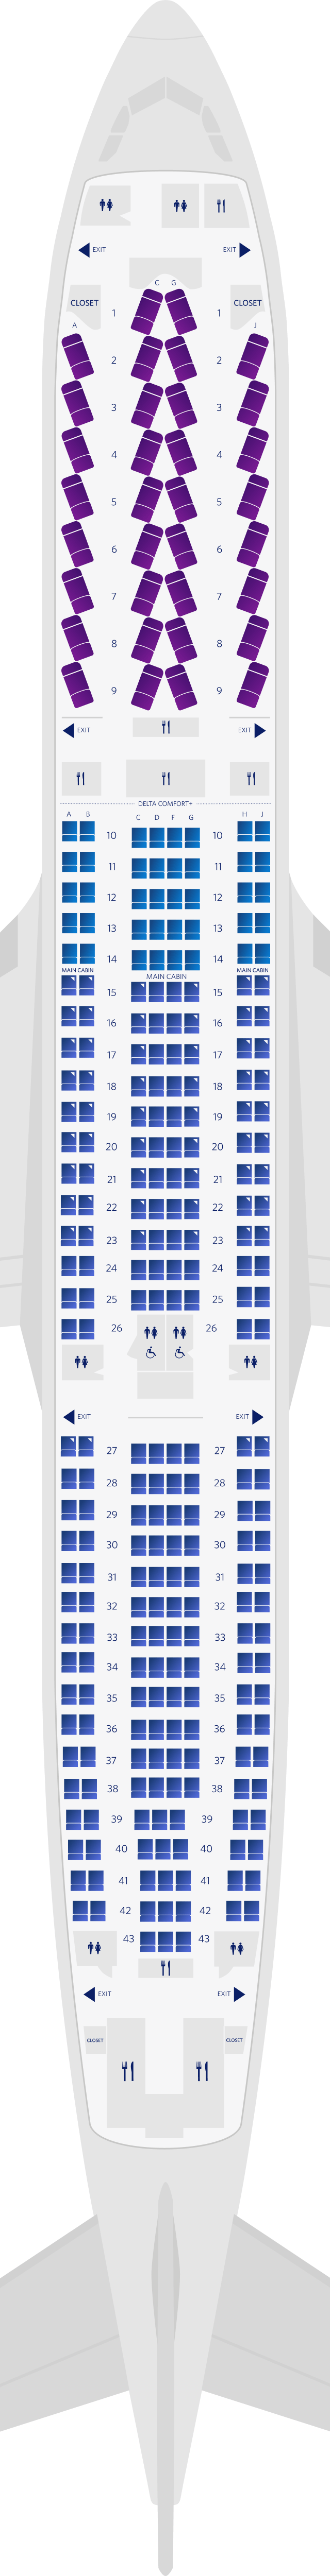 空客A300-300 3机舱座位图(333)